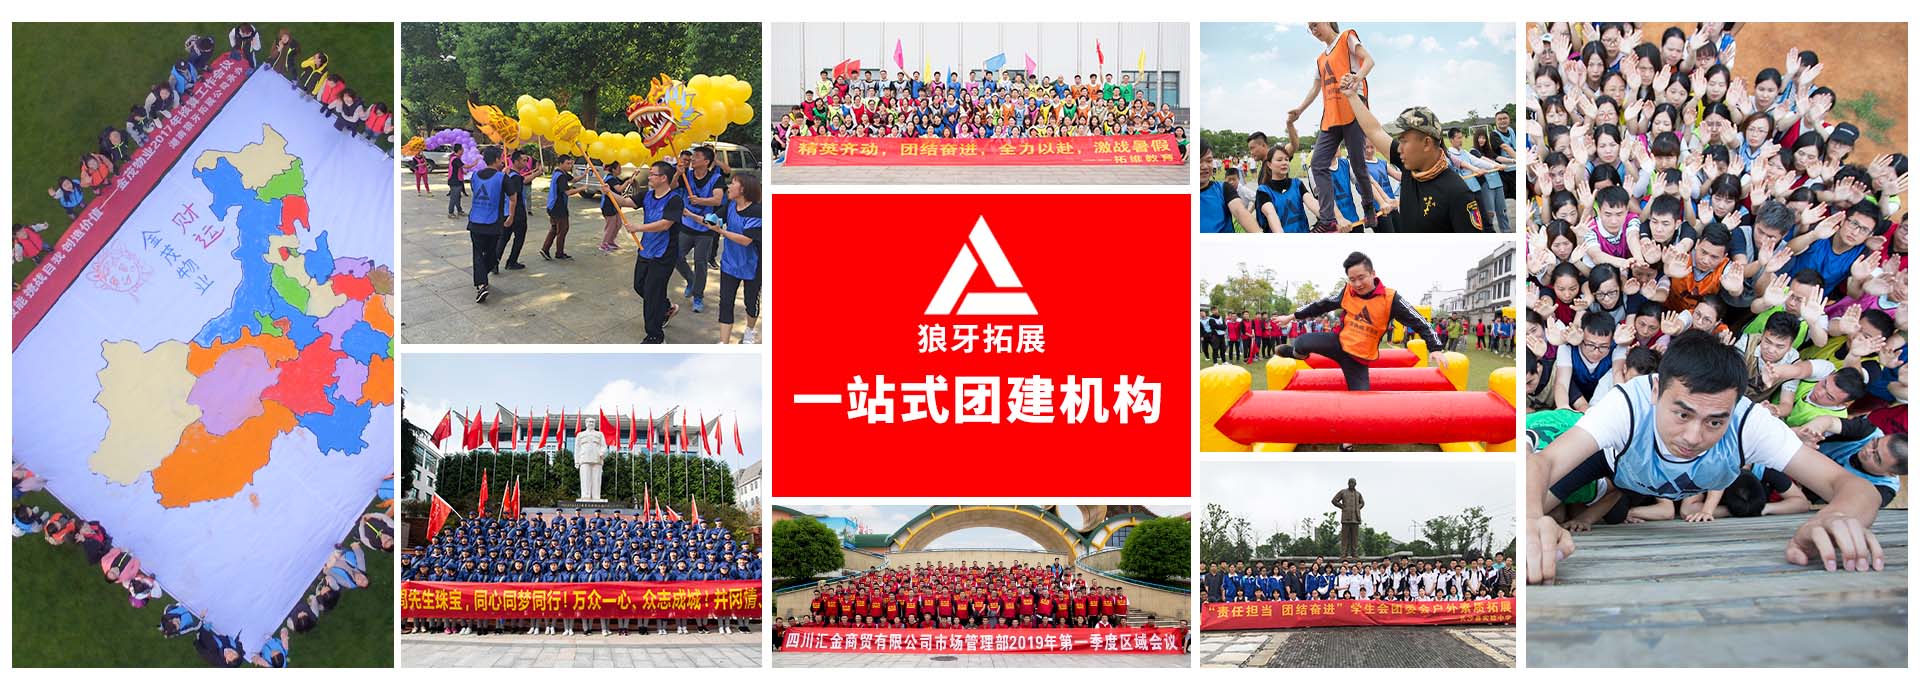 关于当前产品294专享会最新路线·(中国)官方网站的成功案例等相关图片